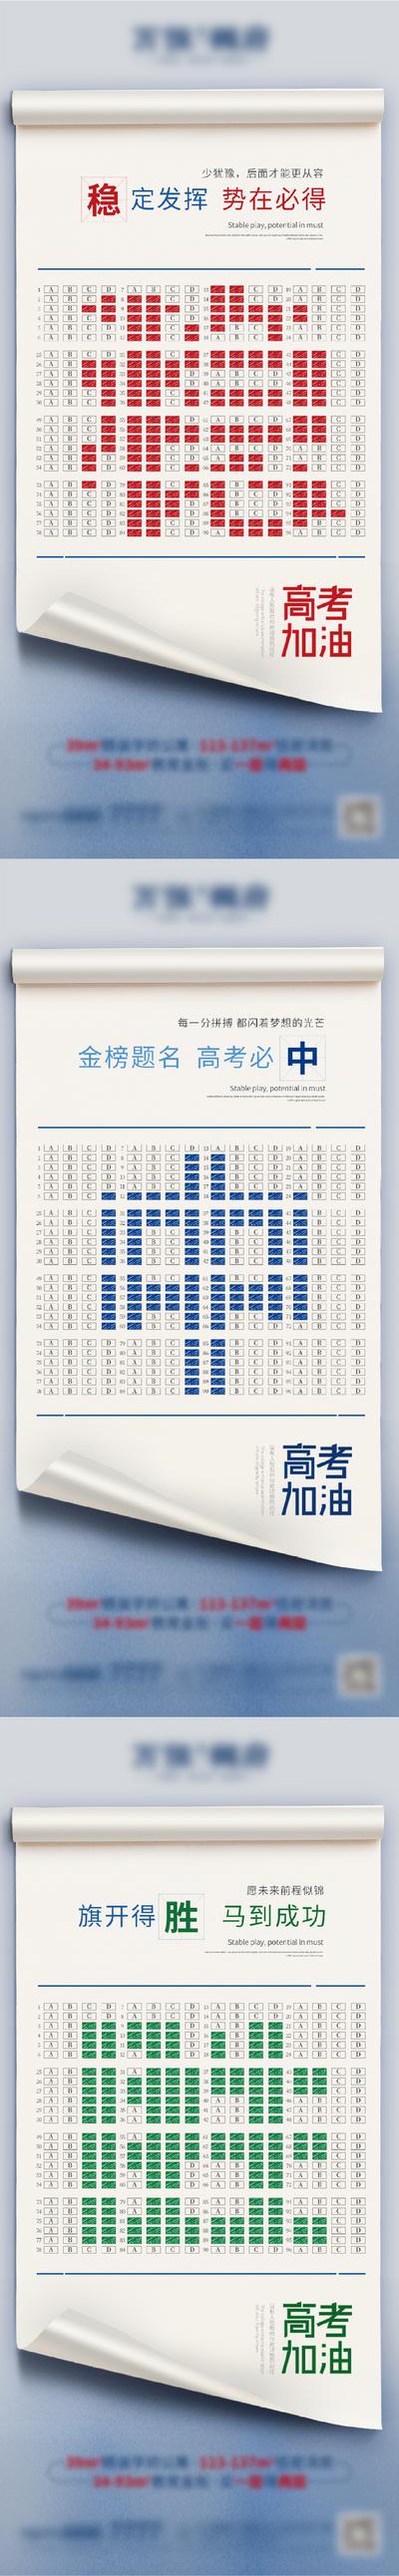 南门网 广告 海报 地产 关键词 高考 创意 系列 单图 热点 文字